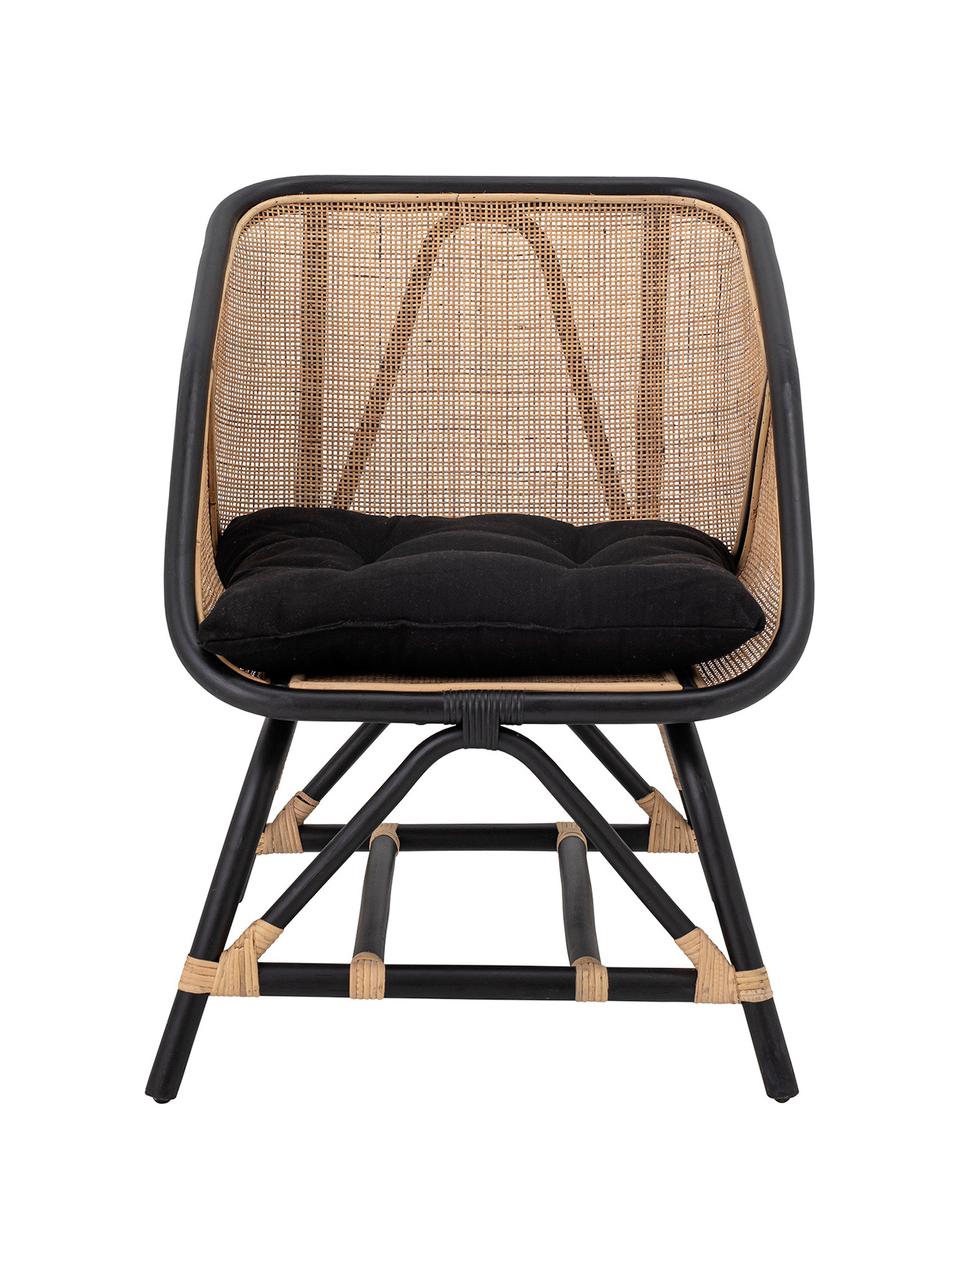 Rotan loungefauteuil Loue in beige/zwart met stoelkussen, Zitvlak: rotan, Frame: rotan, Bekleding: stof, Beige, zwart, 71 x 65 cm